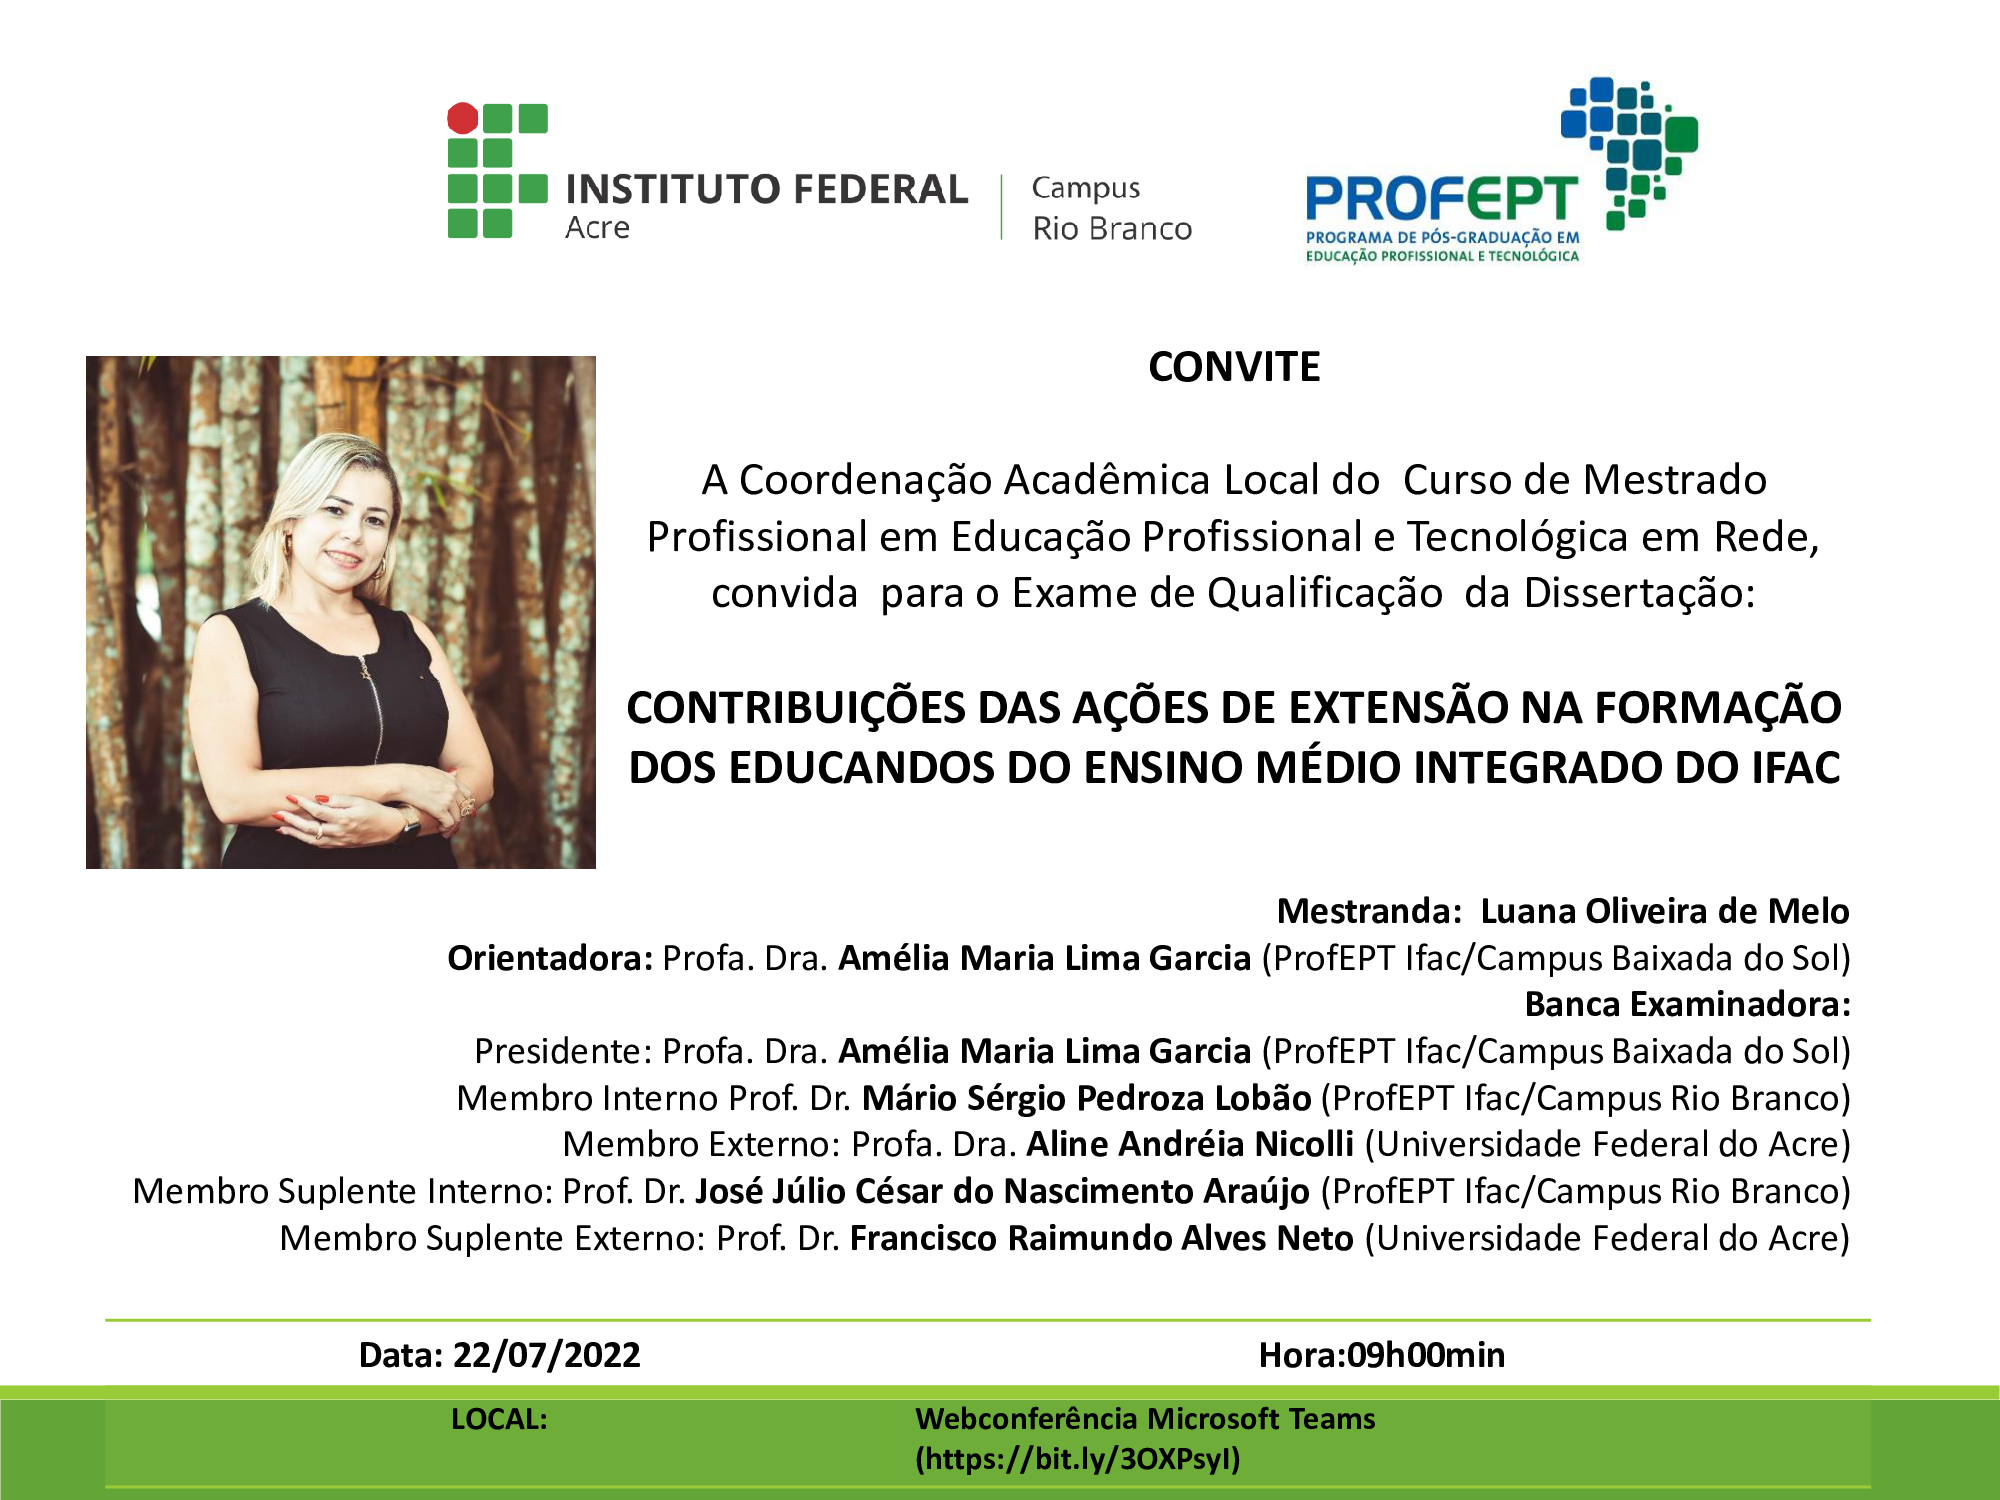 Convite para defesa de qualificação da mestranda Luna Oliveira de Melo, com dissertação intitulada: "Contribuições das Ações de Extensão na Formação dos Educandos do Ensino Médio Integrado do Ifac".